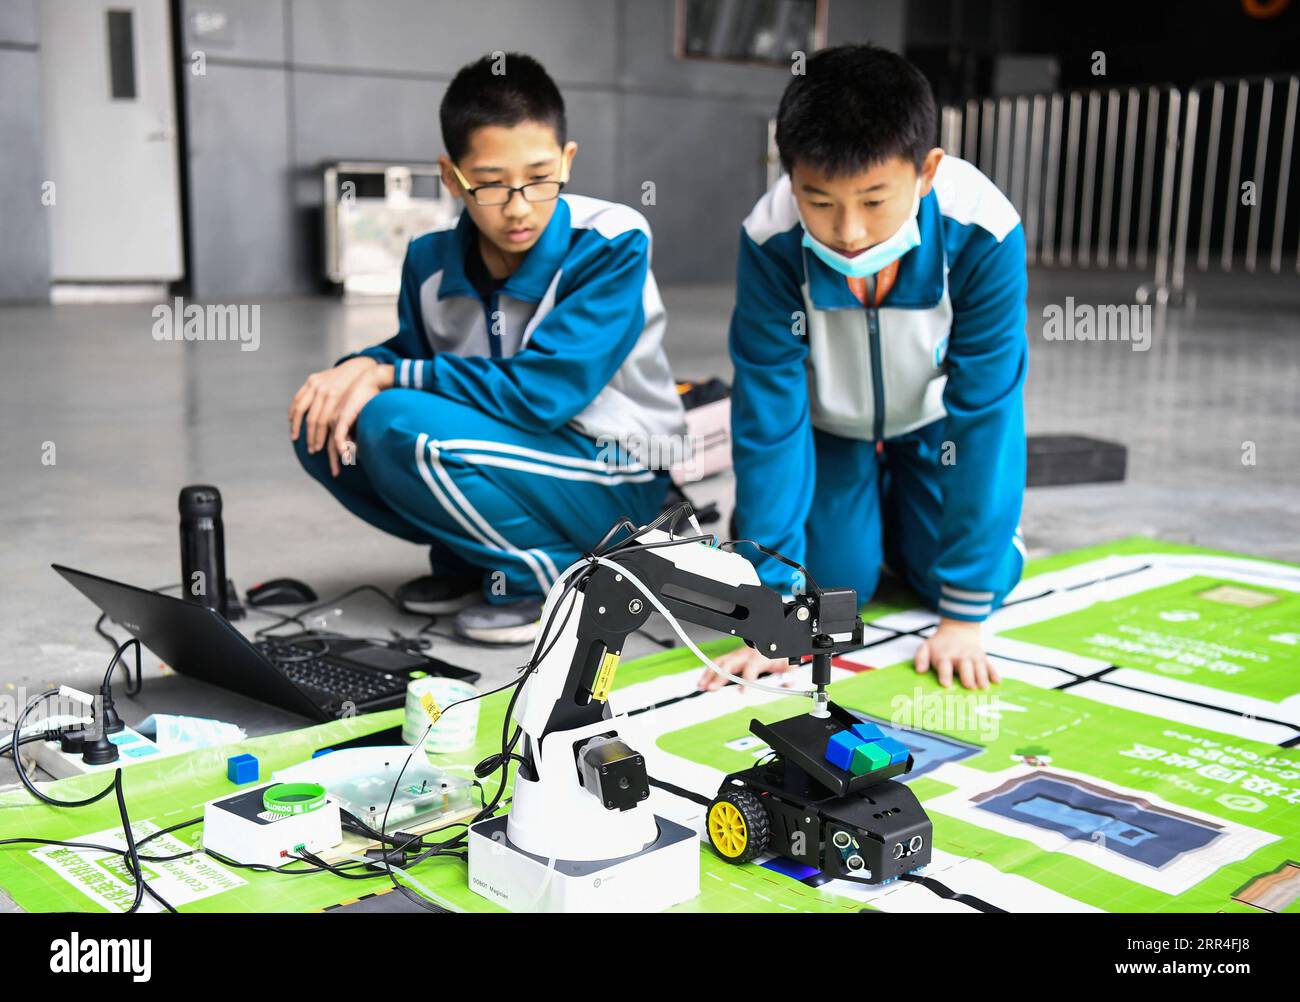 201203 -- FOSHAN, 3 dicembre 2020 -- i partecipanti testano i dispositivi durante le finali del World robot Contest 2020 a Foshan, nella provincia del Guangdong, nella Cina meridionale, 3 dicembre 2020. Le finali del World robot Contest 2020 hanno aperto qui giovedì. I concorsi di quest'anno includono un concorso coesistente-cooperativo-cognitivo Tri-Co, un concorso controllato da Brain-computer Interface BCI, un concorso di applicazioni robot e un concorso per giovani designer. CHINA-GUANGDONG-2020 WORLD ROBOT CONTEST CN DENGXHUA PUBLICATIONXNOTXINXCHN Foto Stock